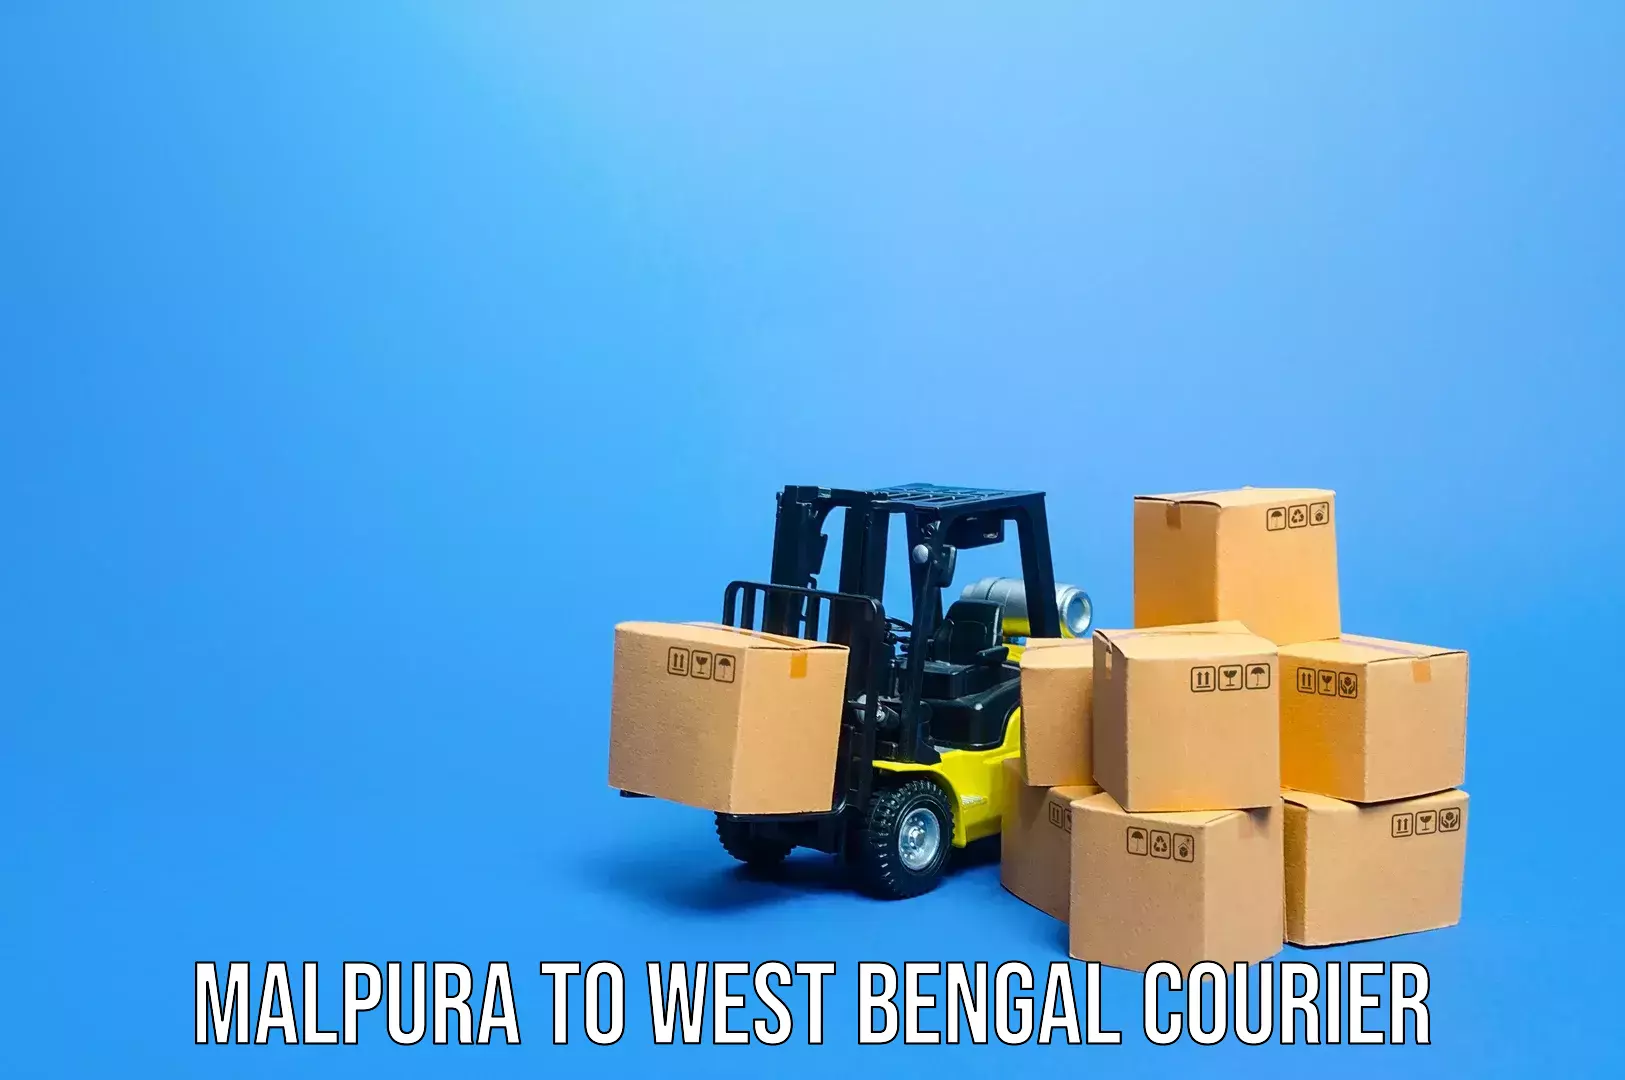 Luggage delivery app Malpura to Algarah